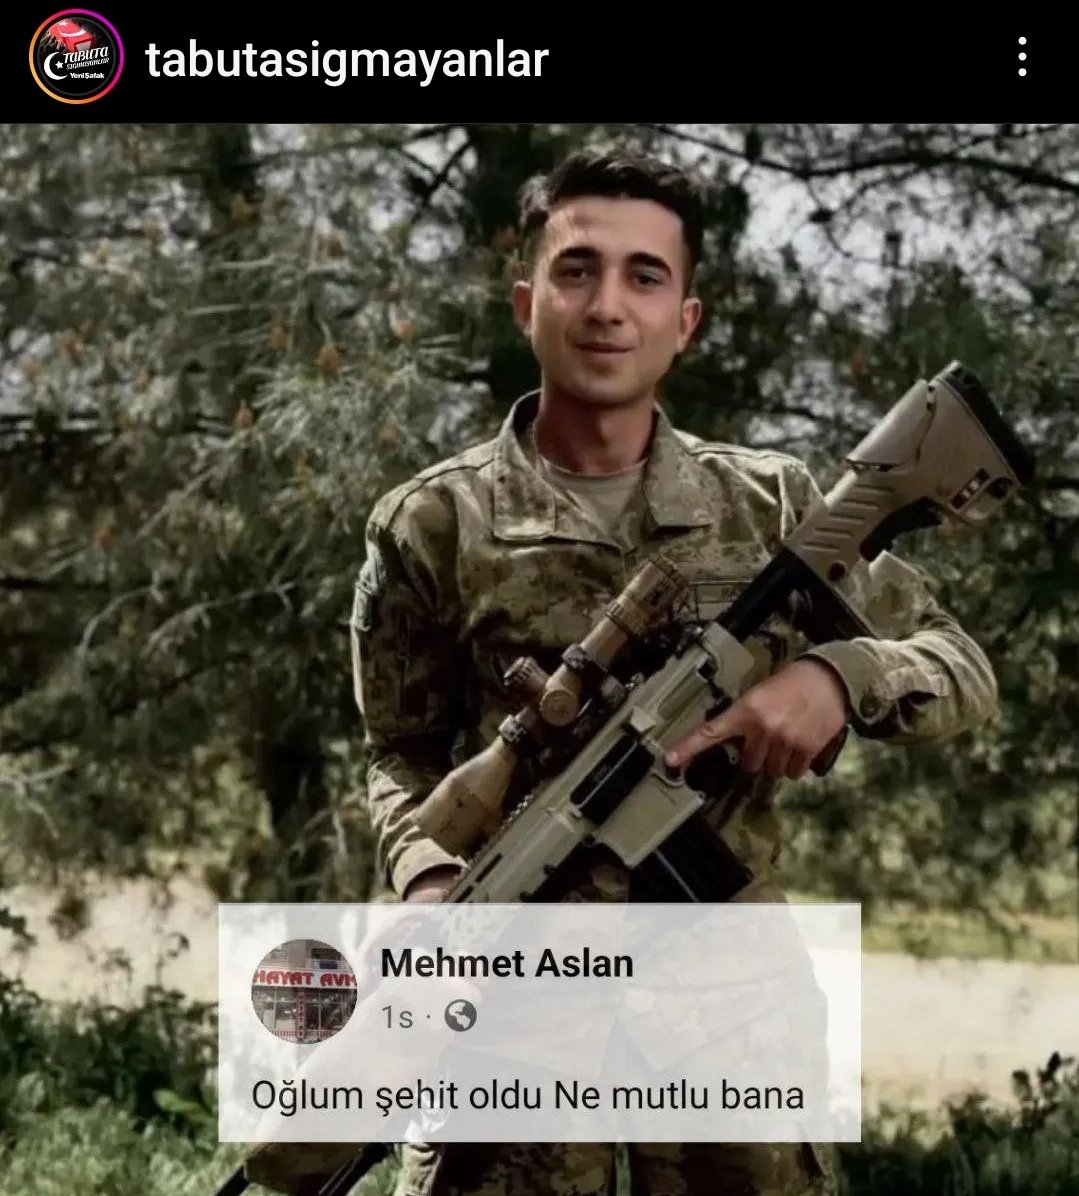 Pençe kilit Harekatı bölgesinde çıkan çatışmada şehit olan Elazığlı piyade sözleşmeli er Kemal Aslan'ın babası Mehmet Aslan'ın paylaşımı ! Cennetmekan şehidimiz, Ahmedim'e selam eyle !